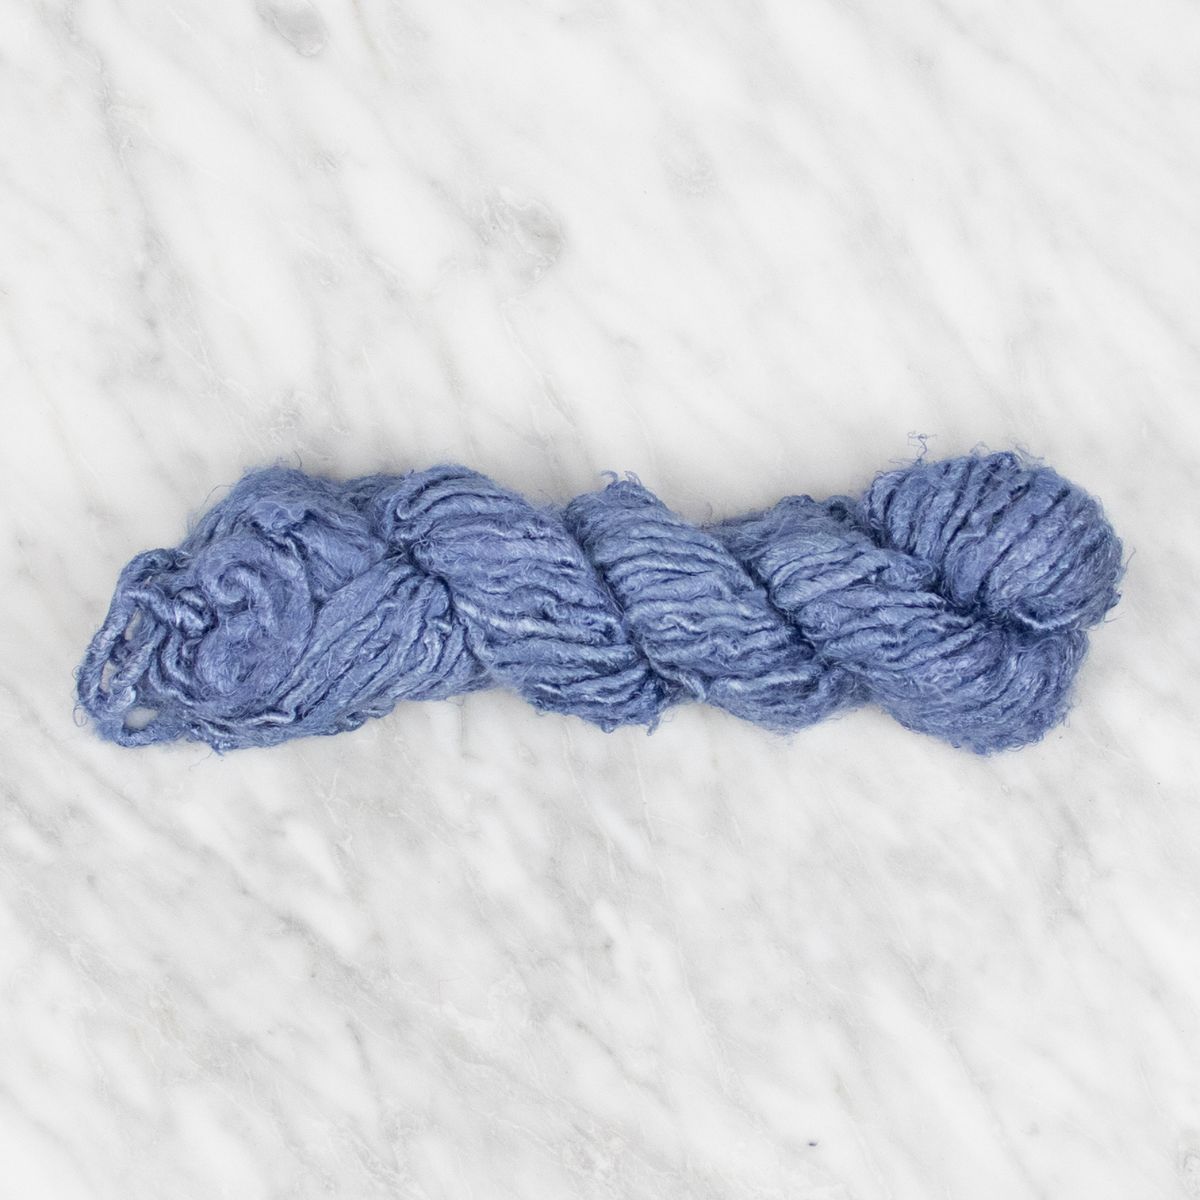 Viscose Art Yarn - Classic Blue - 100 grams